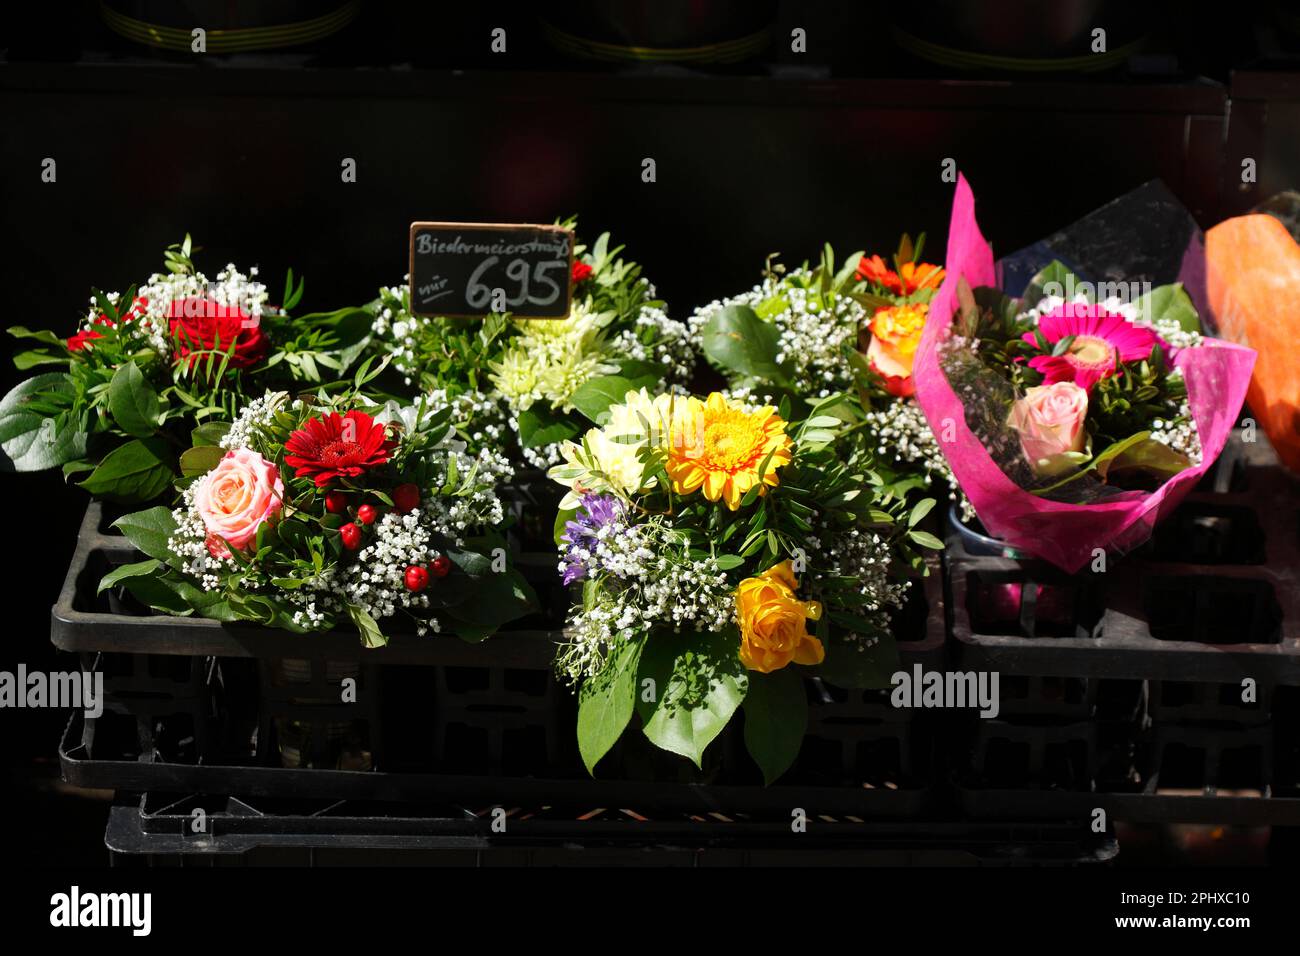 Bouquets de fleurs, bouquets colorés de fleurs sur un marché aux fleurs, Allemagne Banque D'Images